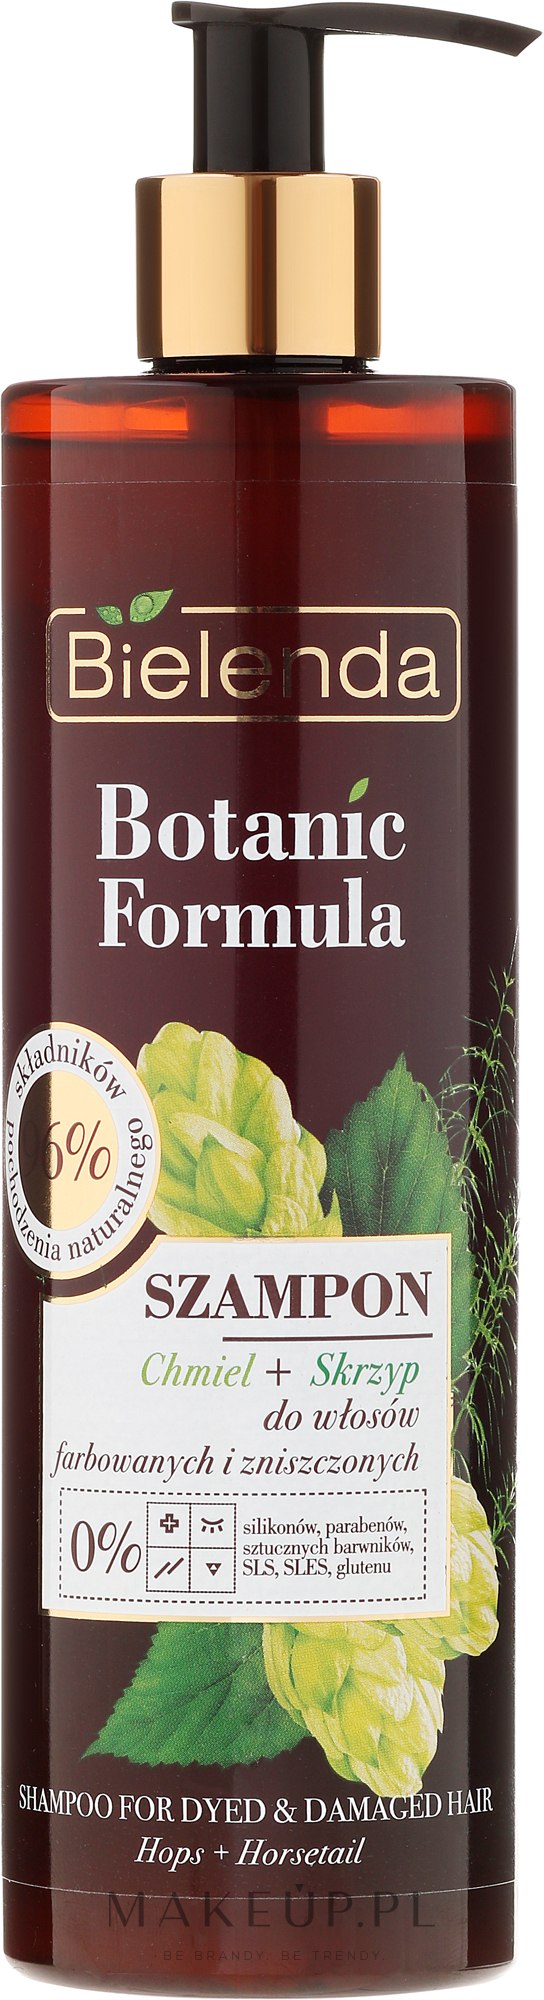 bielenda botanic formula szampon do włosów farbowanych skrzyp polny chmiel